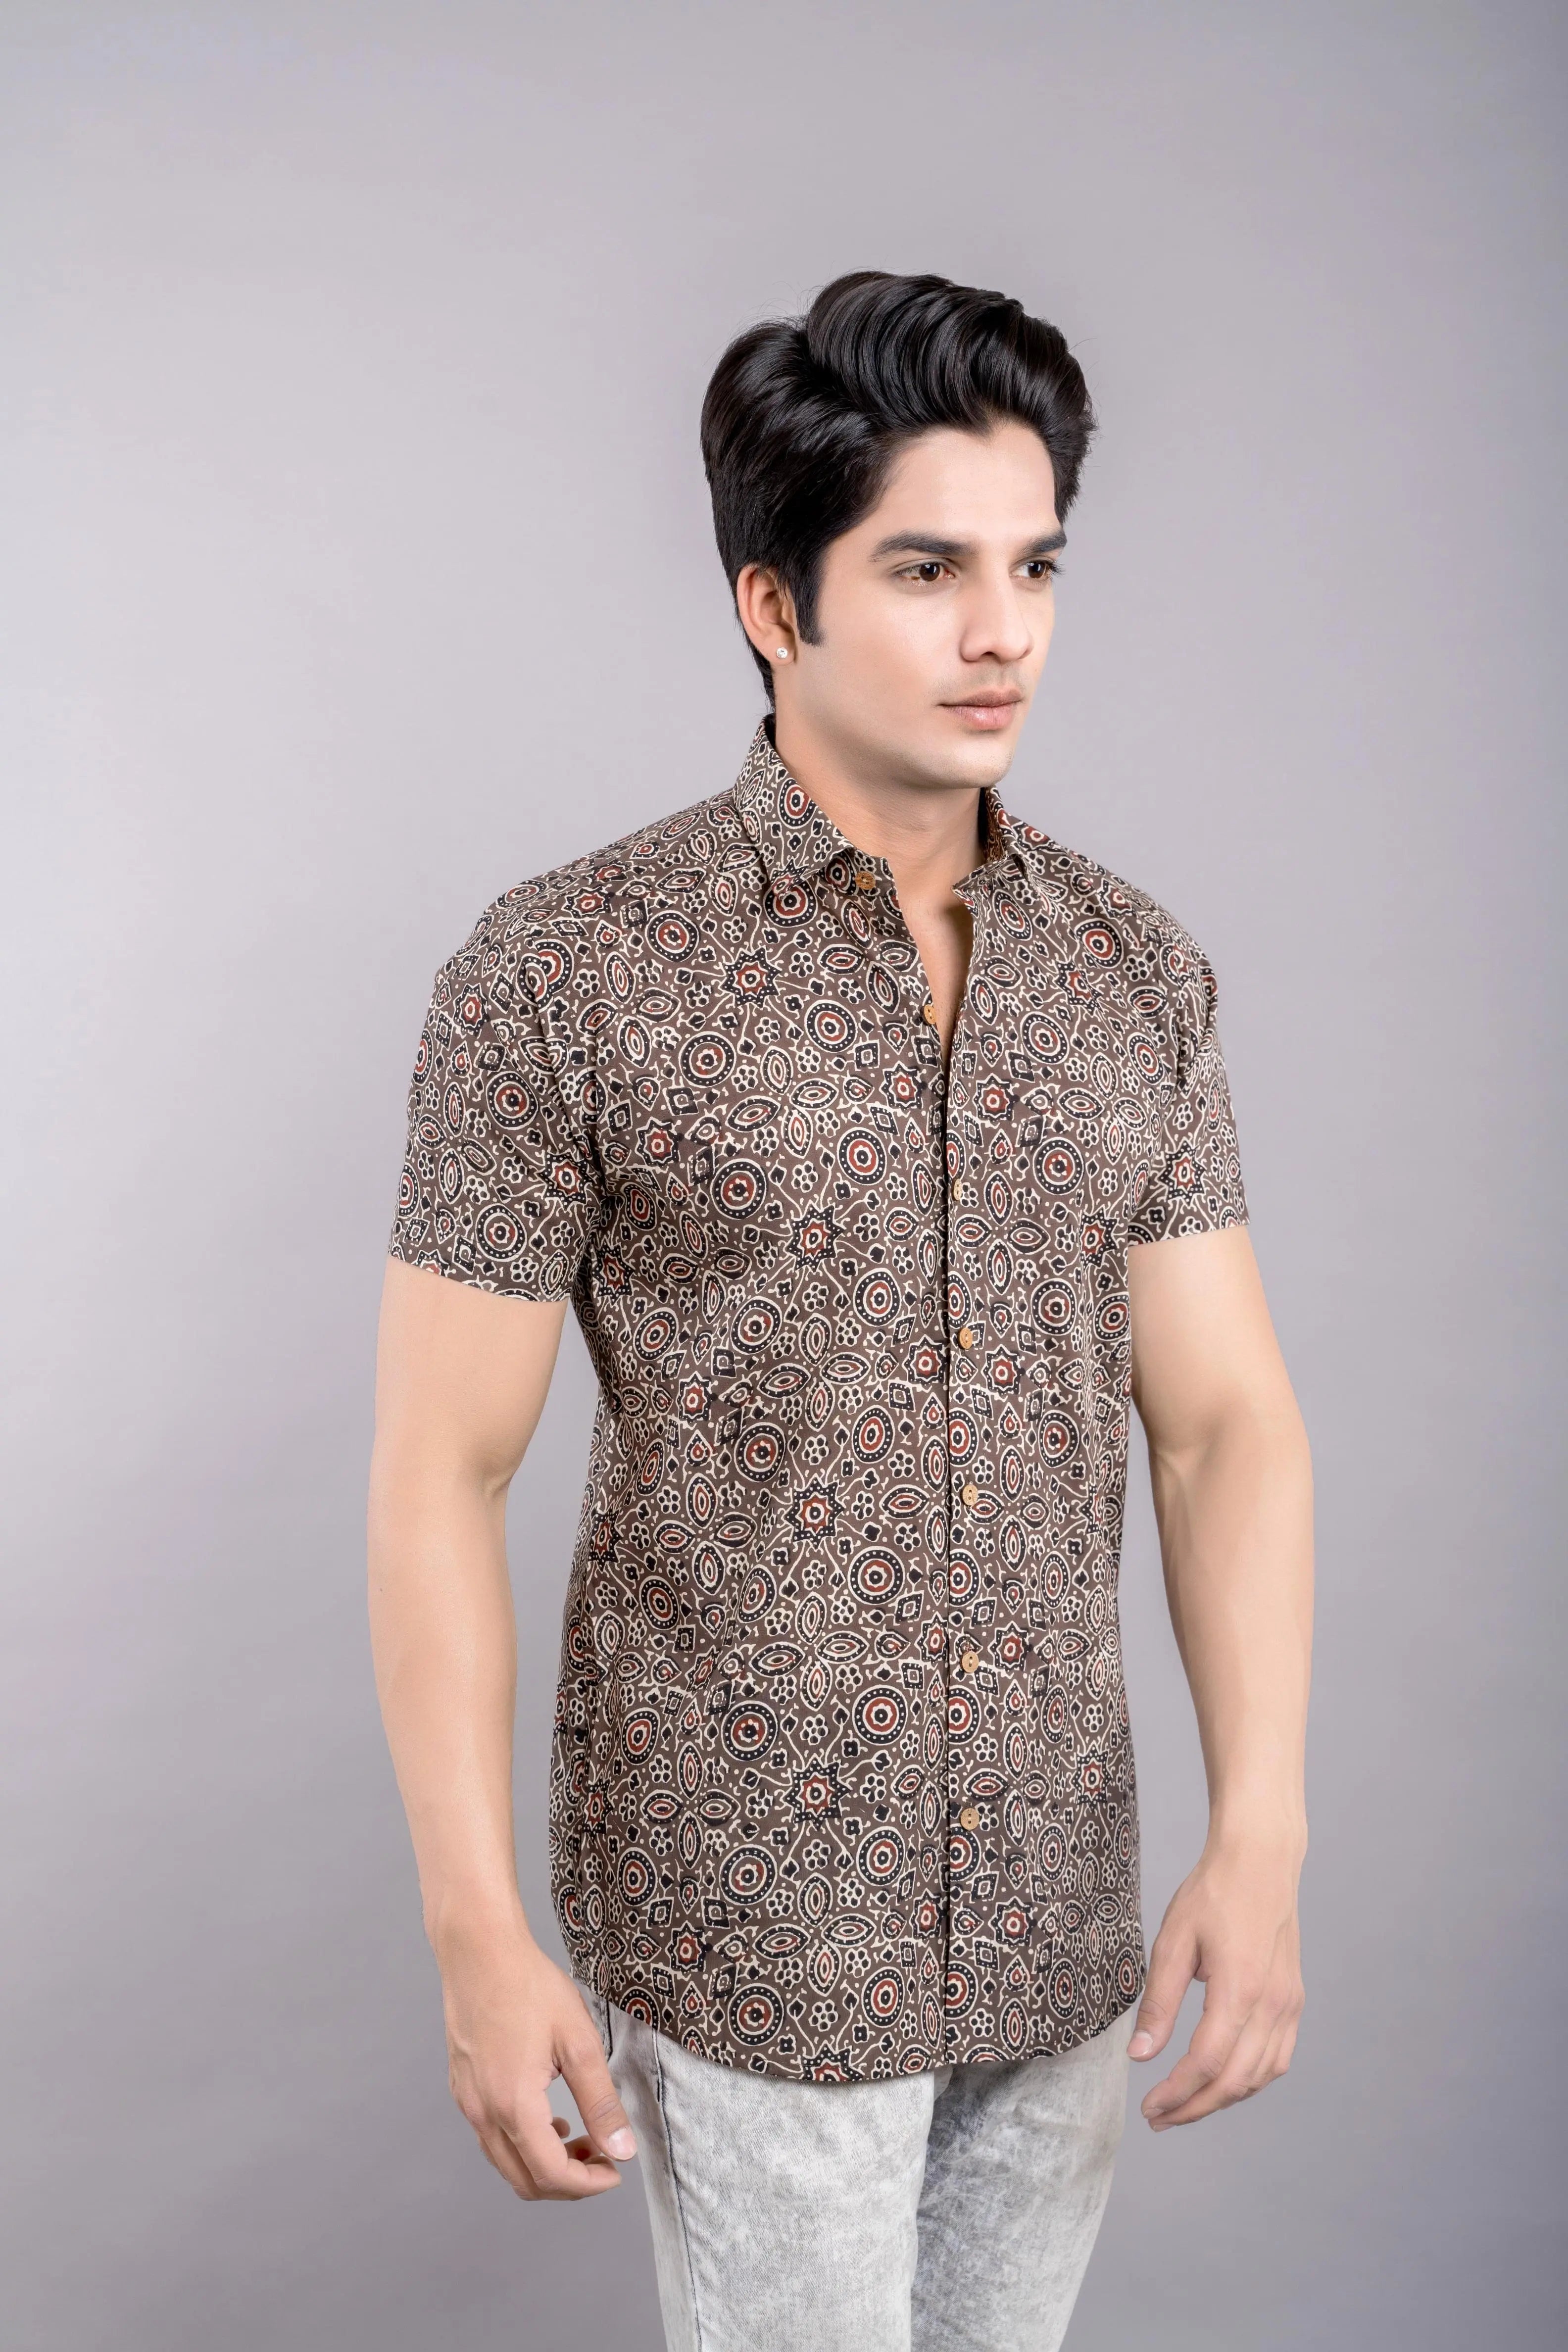 Firangi Yarn Ajrakh Printed 100% Cotton Shirt For Men -Brown